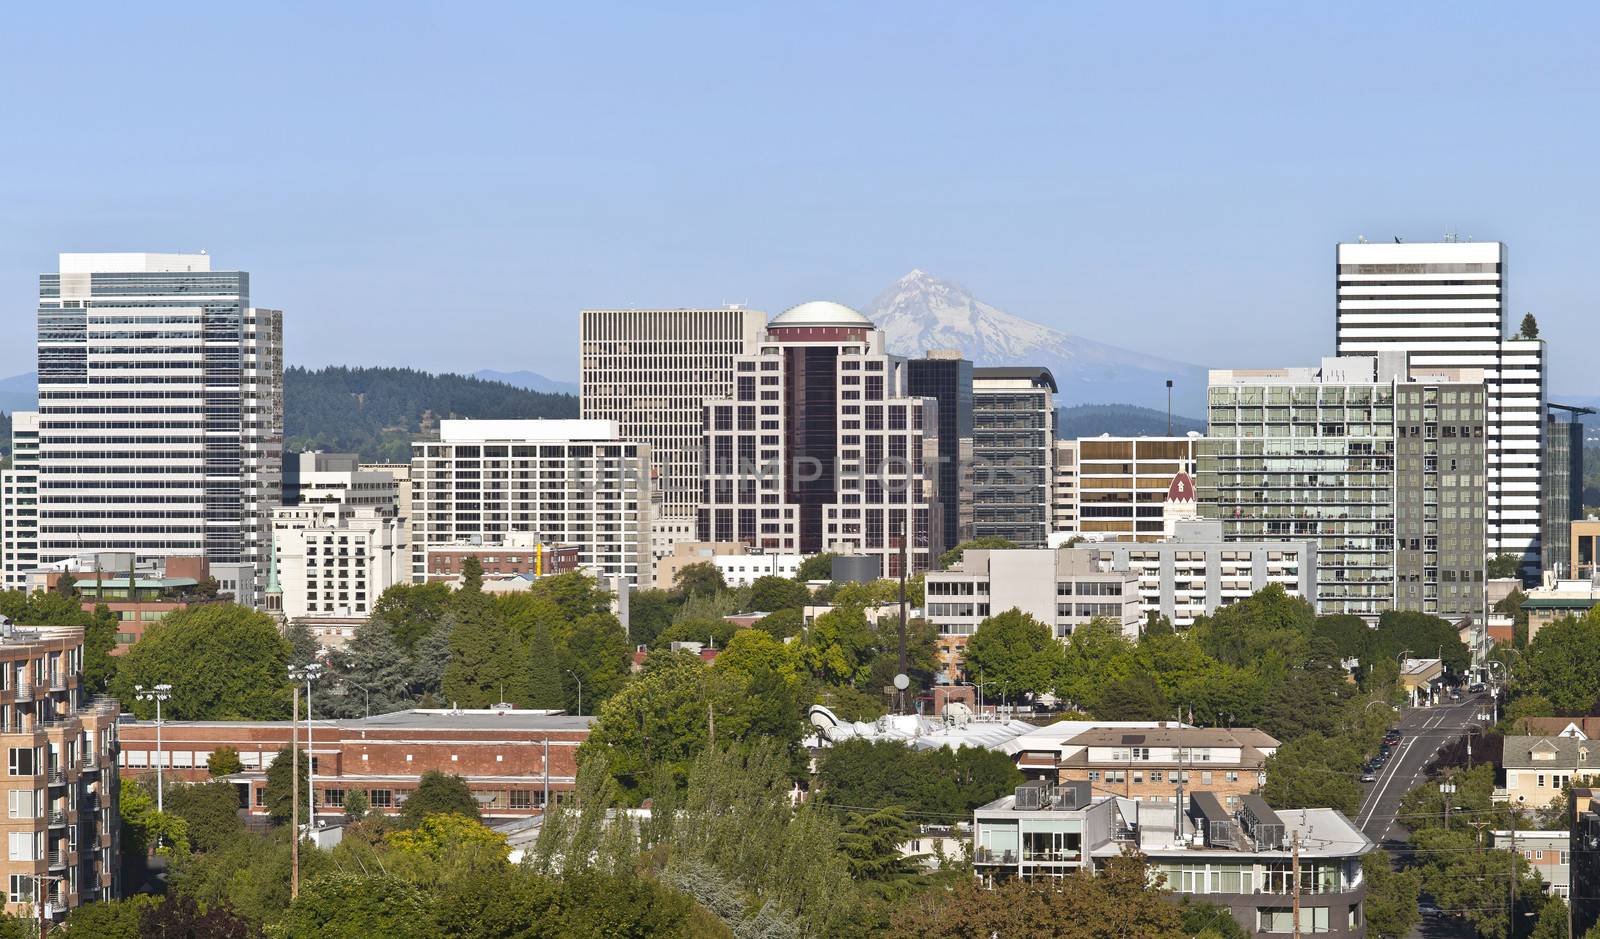 Portland Oregon skyline with Mt. Hood. by Rigucci